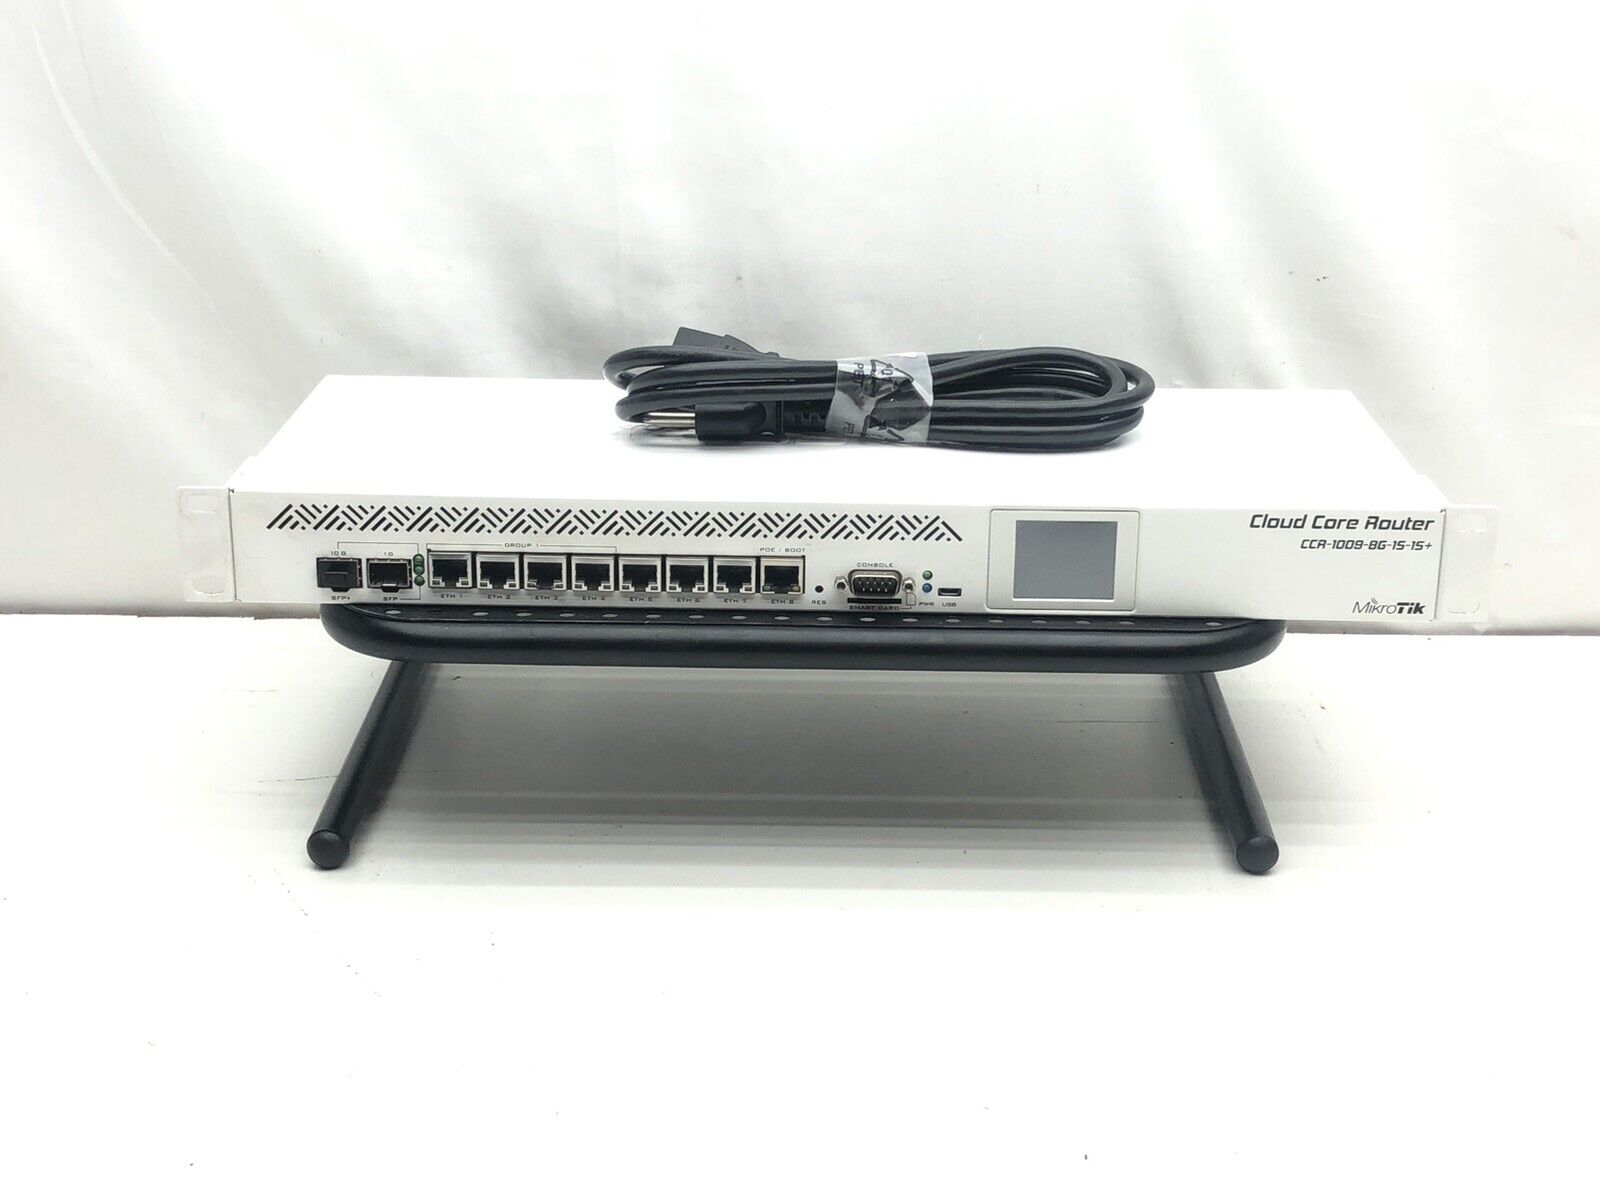 Mikrotik CCR1009-8G-1S-1S+ Cloud Core Router w/ power cord